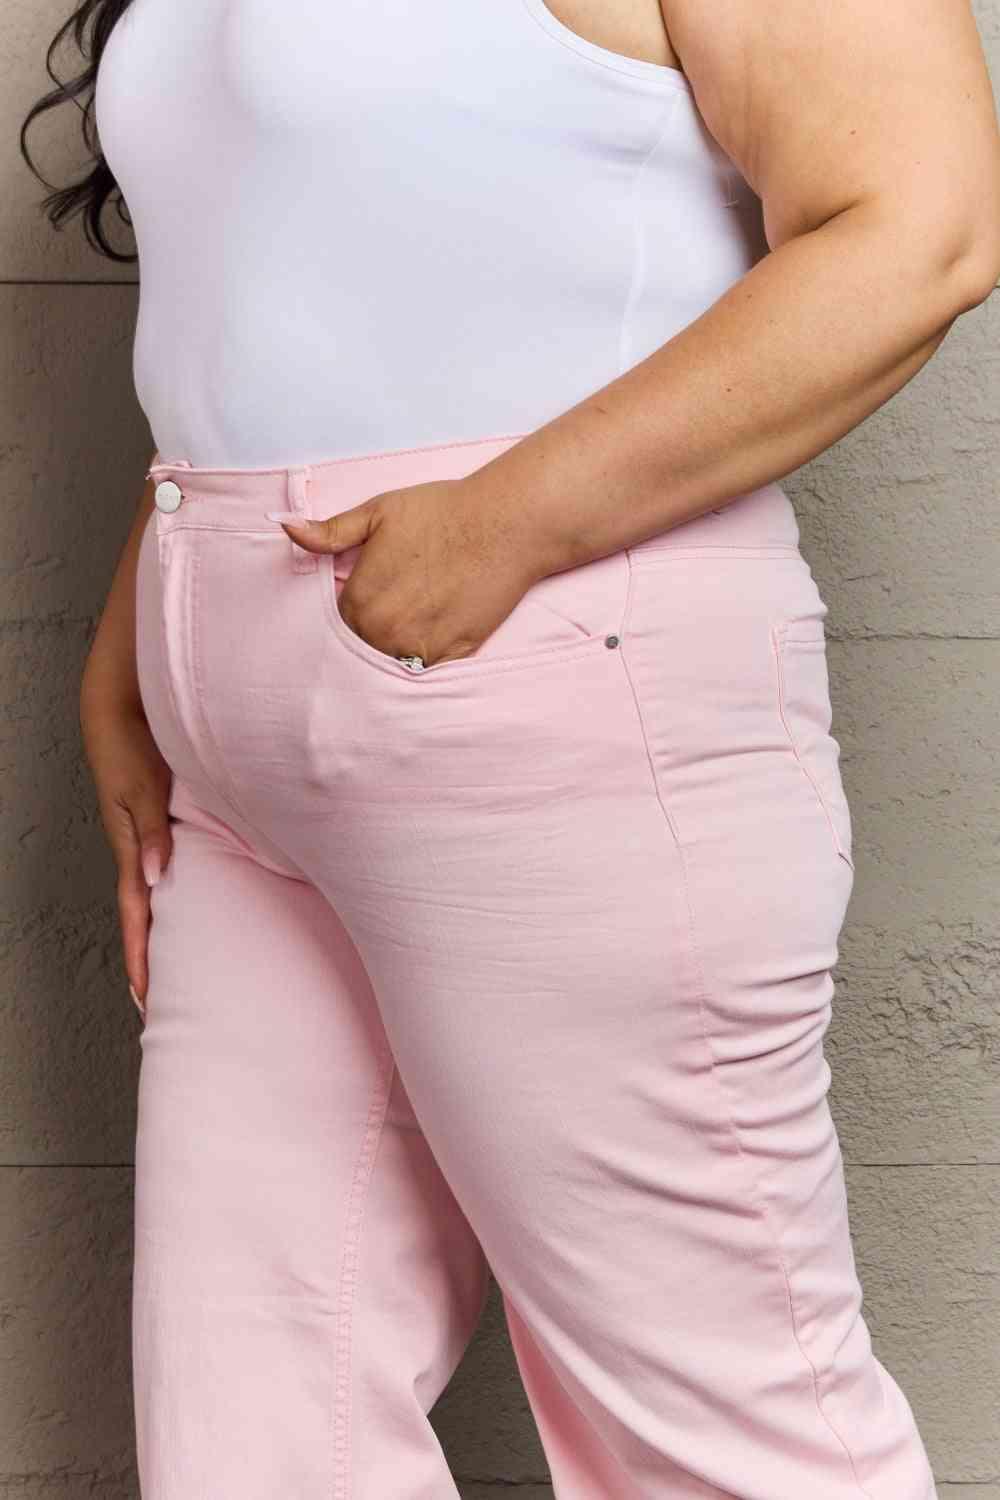 Bona Fide Fashion - Full Size High Waist Wide Leg Jeans in Light Pink - Women Fashion - Bona Fide Fashion